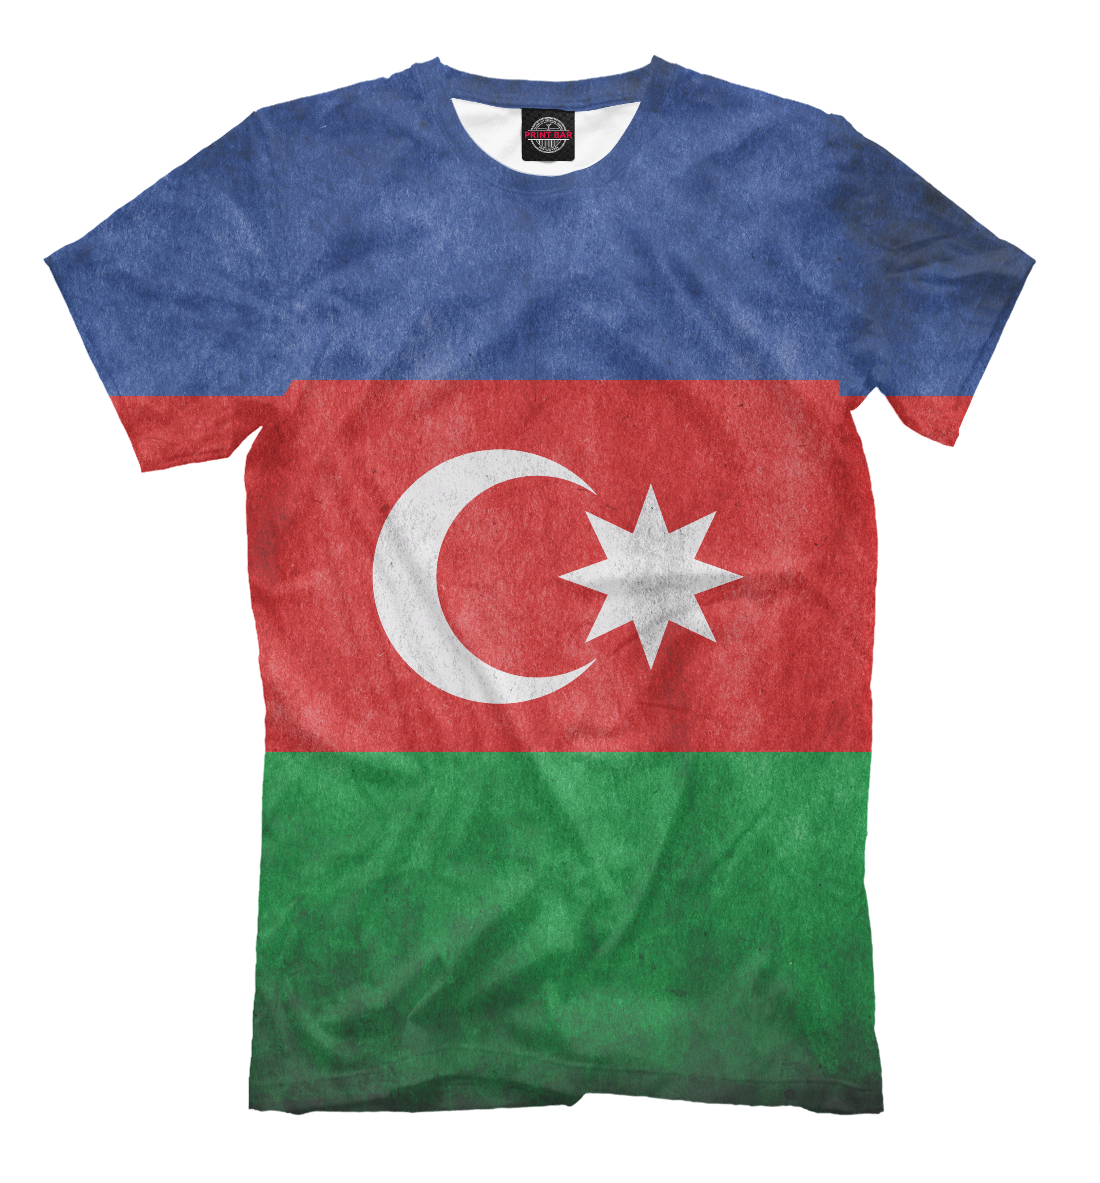 Флаг майка. Футболка с флагом. Футболка с азербайджанским флагом. Флаг Азербайджана. Футболка с турецким флагом.